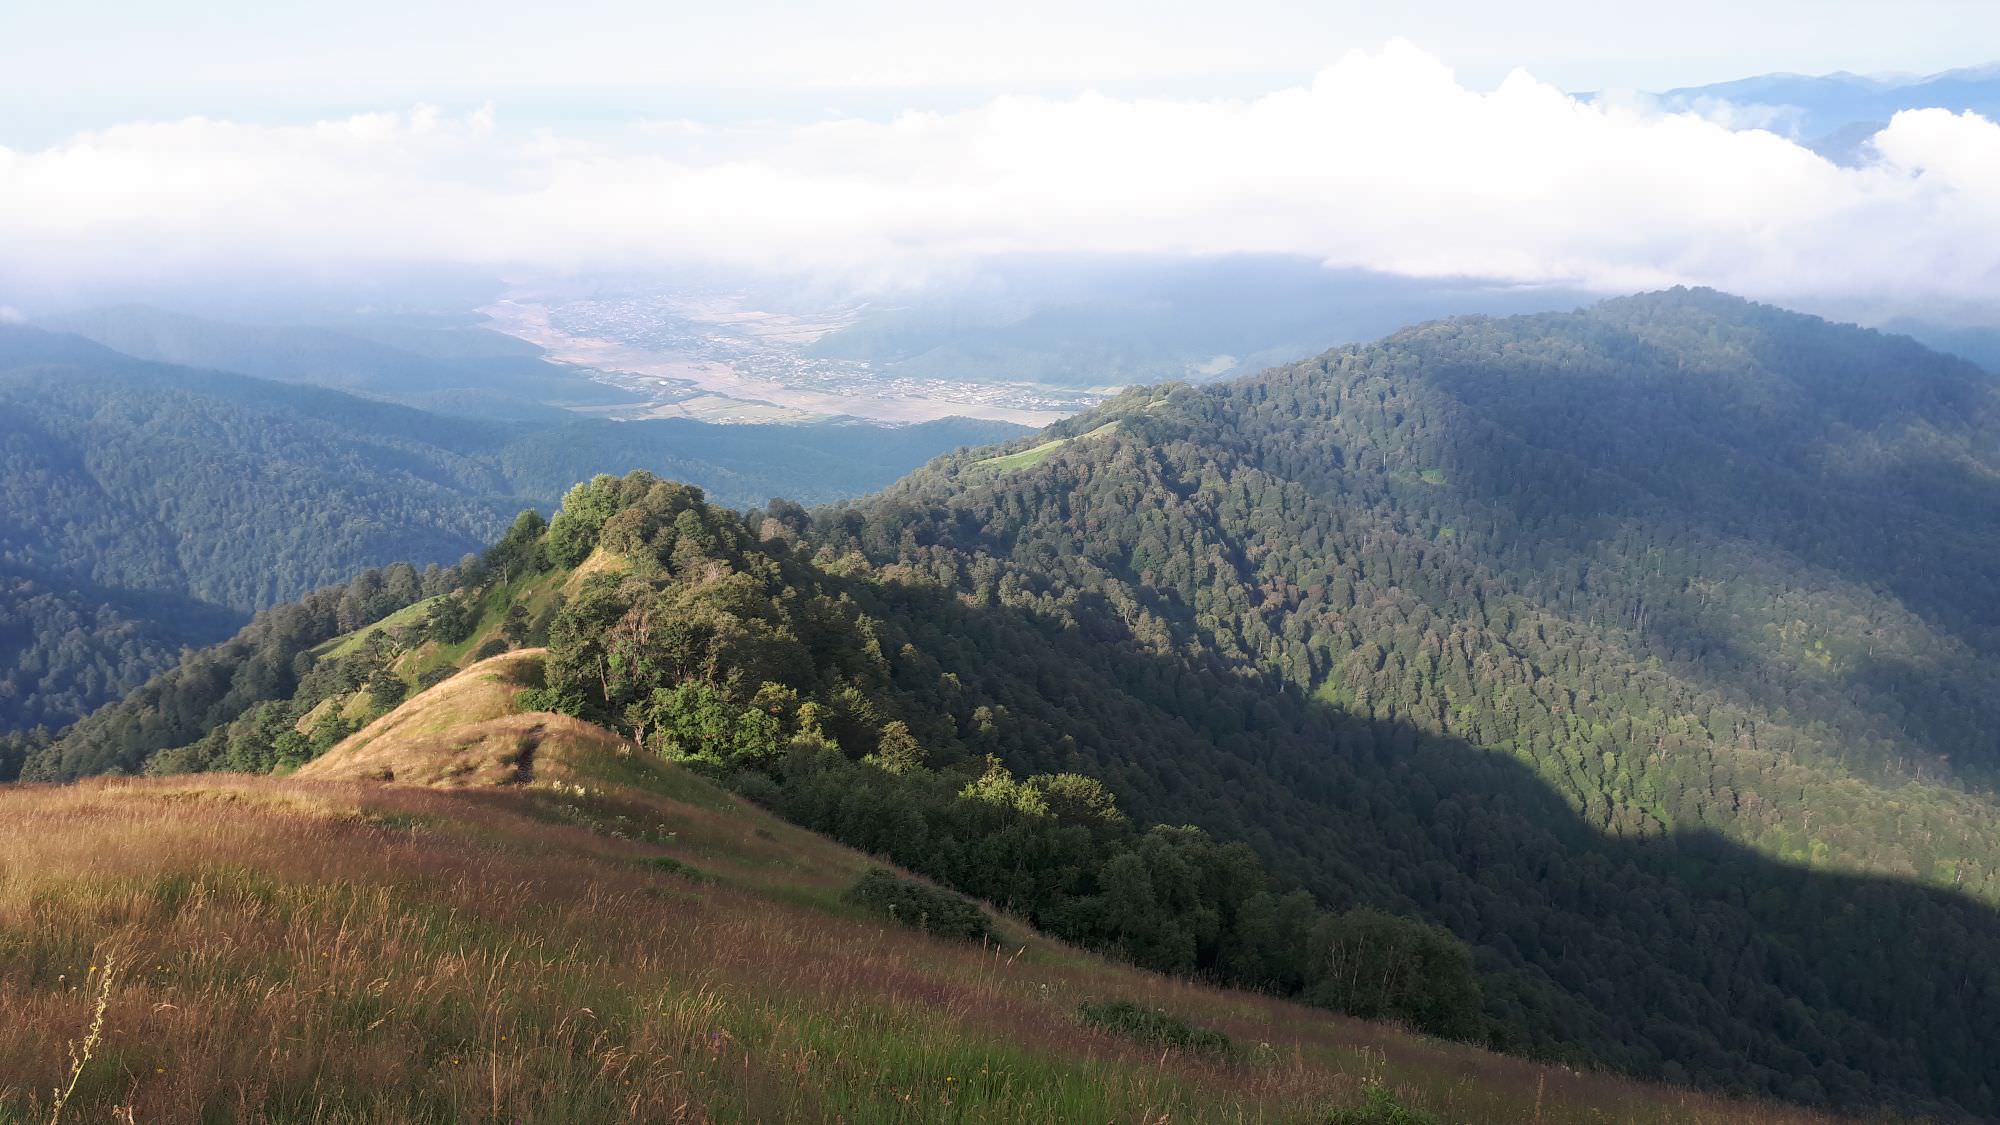 Pankisi gorge visible below